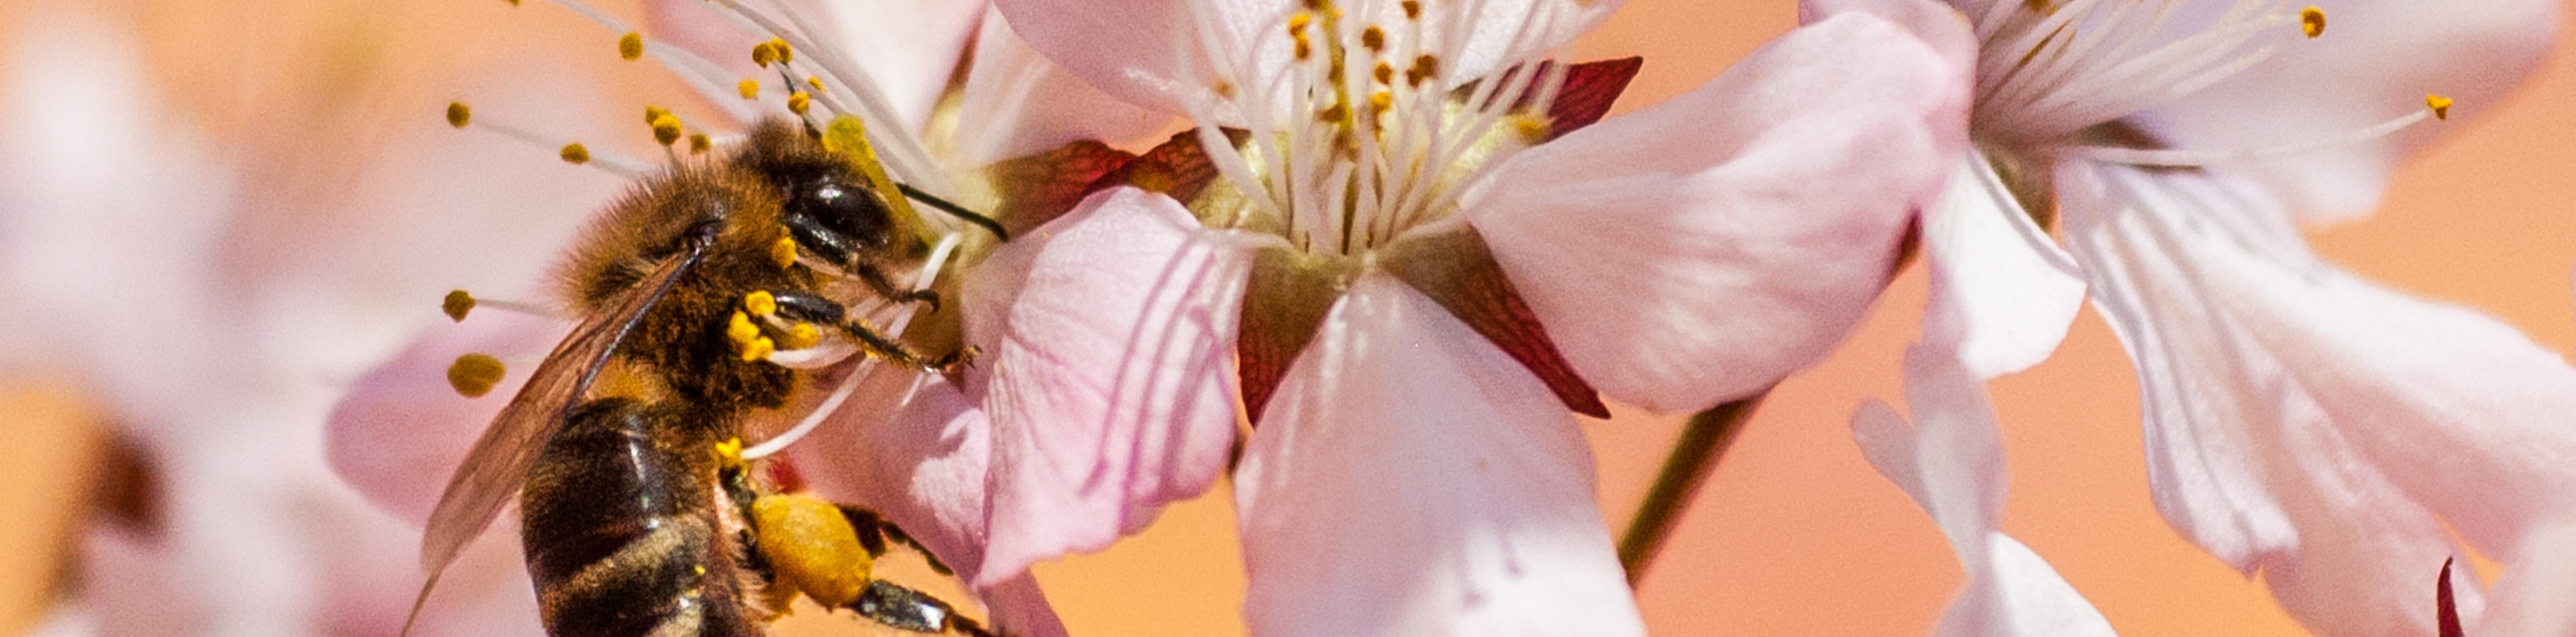 Eine Biene sammelt Nektar von rosa Kirschblüten, bedeckt mit Pollen, die die Bestäubung fördern.